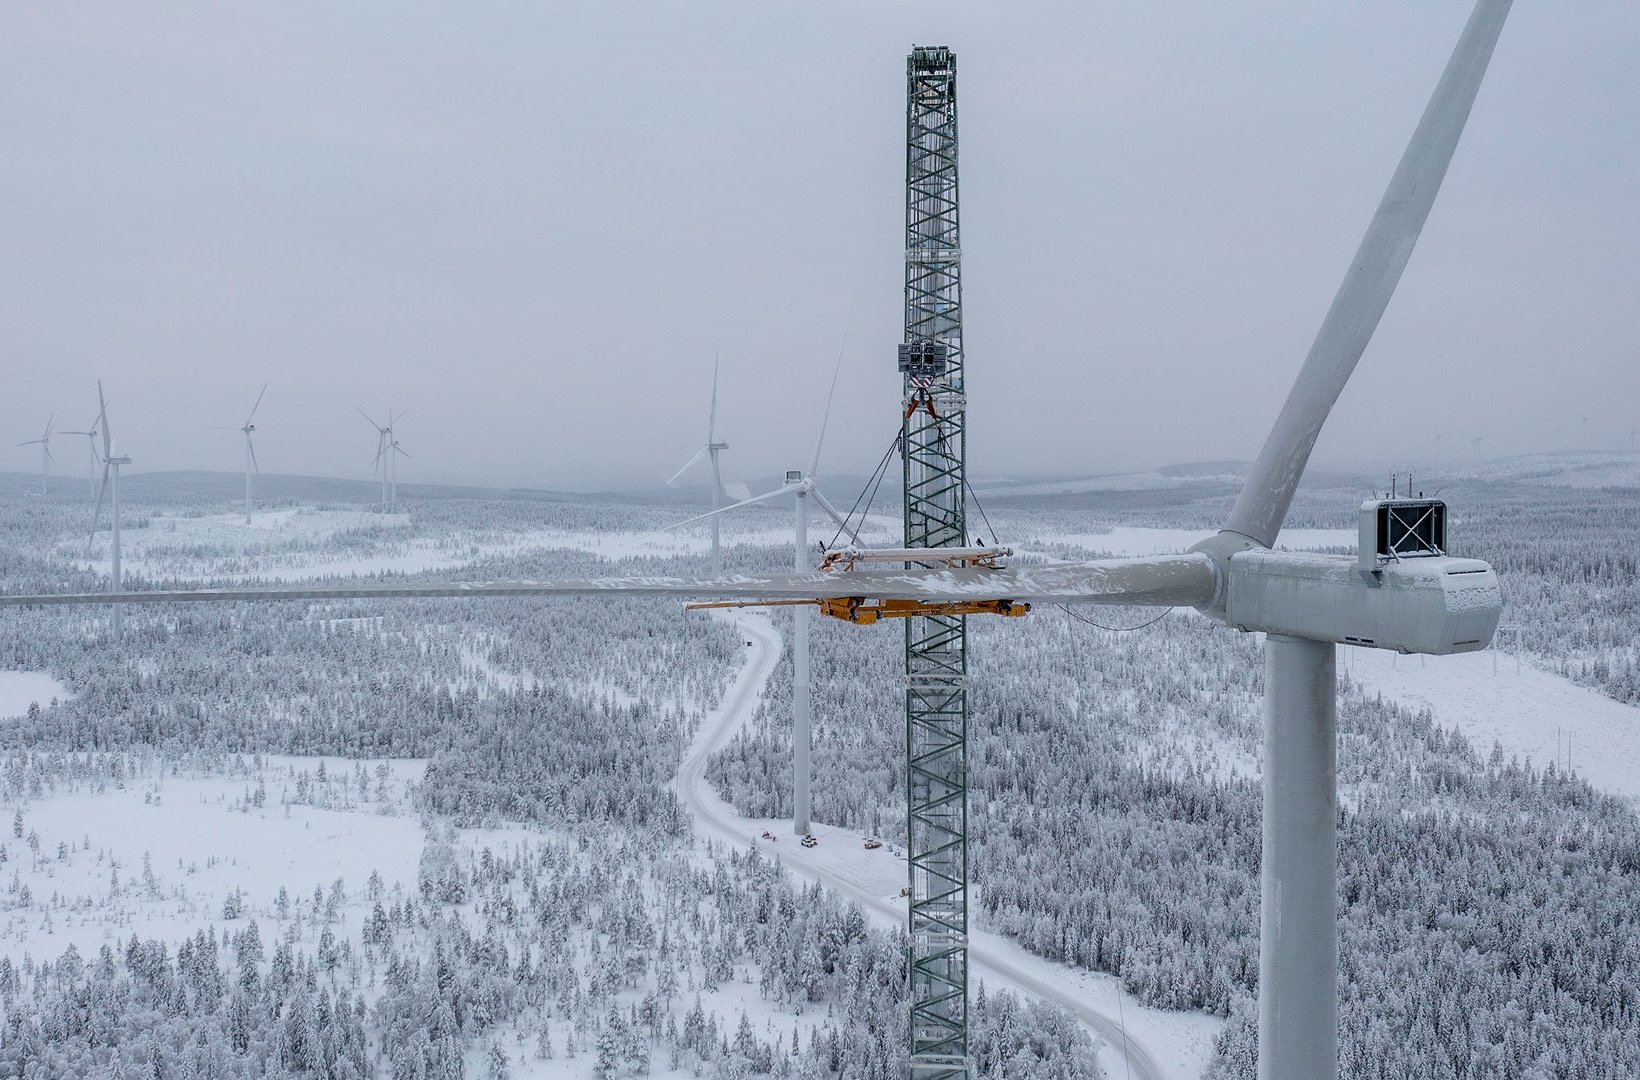 Blakliden Fäbodberget windfarm in northern Sweden